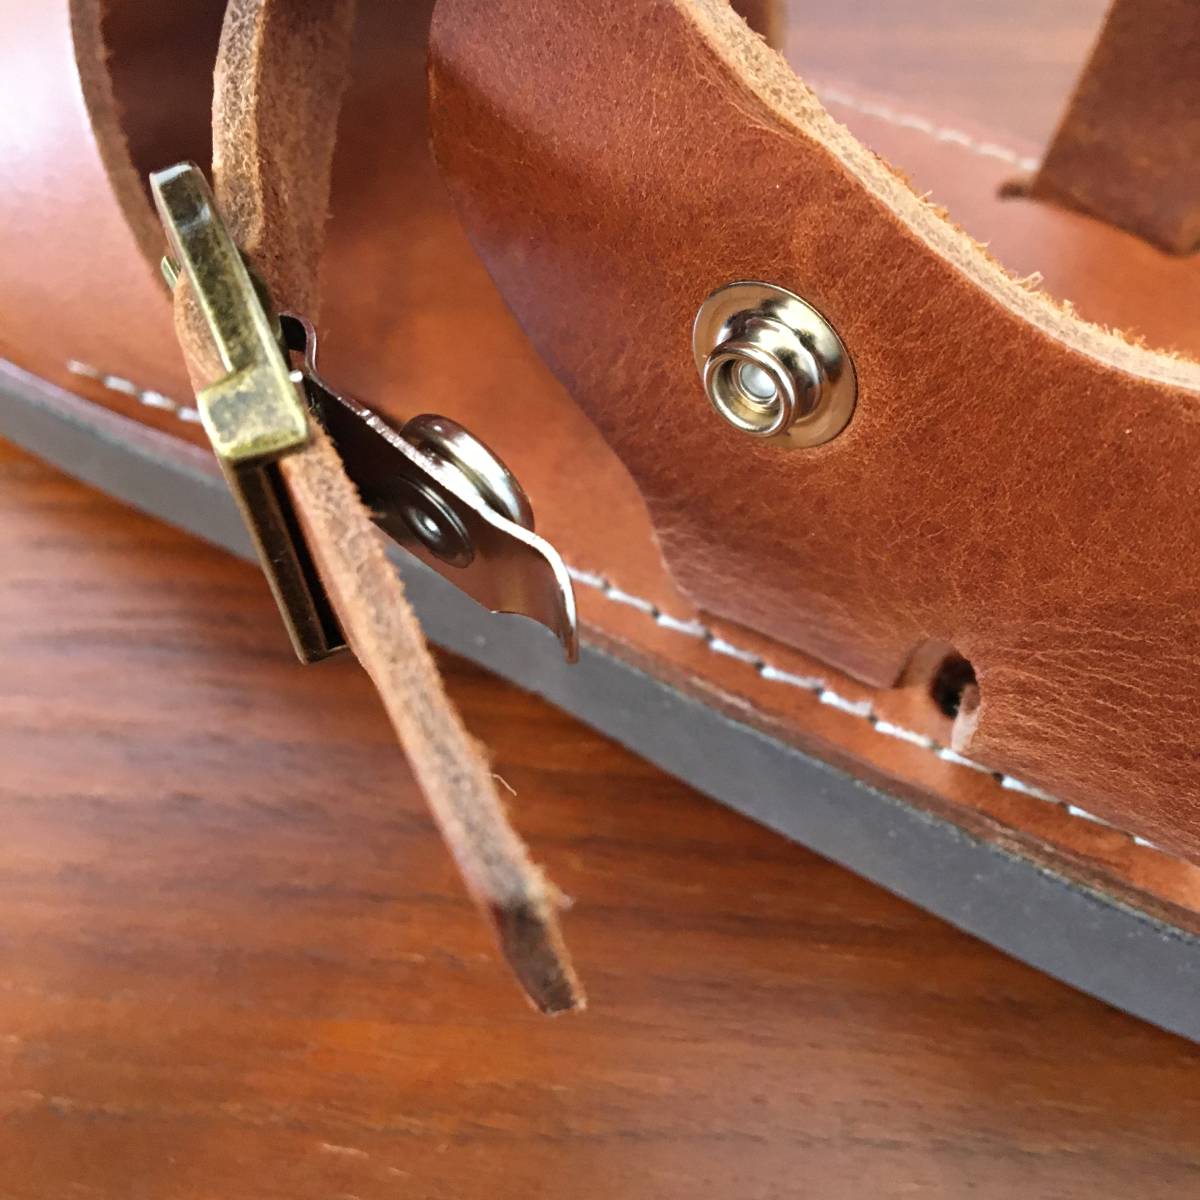 26.0cm * Organic handloom органический руль -mGURKHAg LUKA Brown кожа сделано в Японии Japan обувь сандалии ( новый товар )( быстрое решение )( стандартный товар )